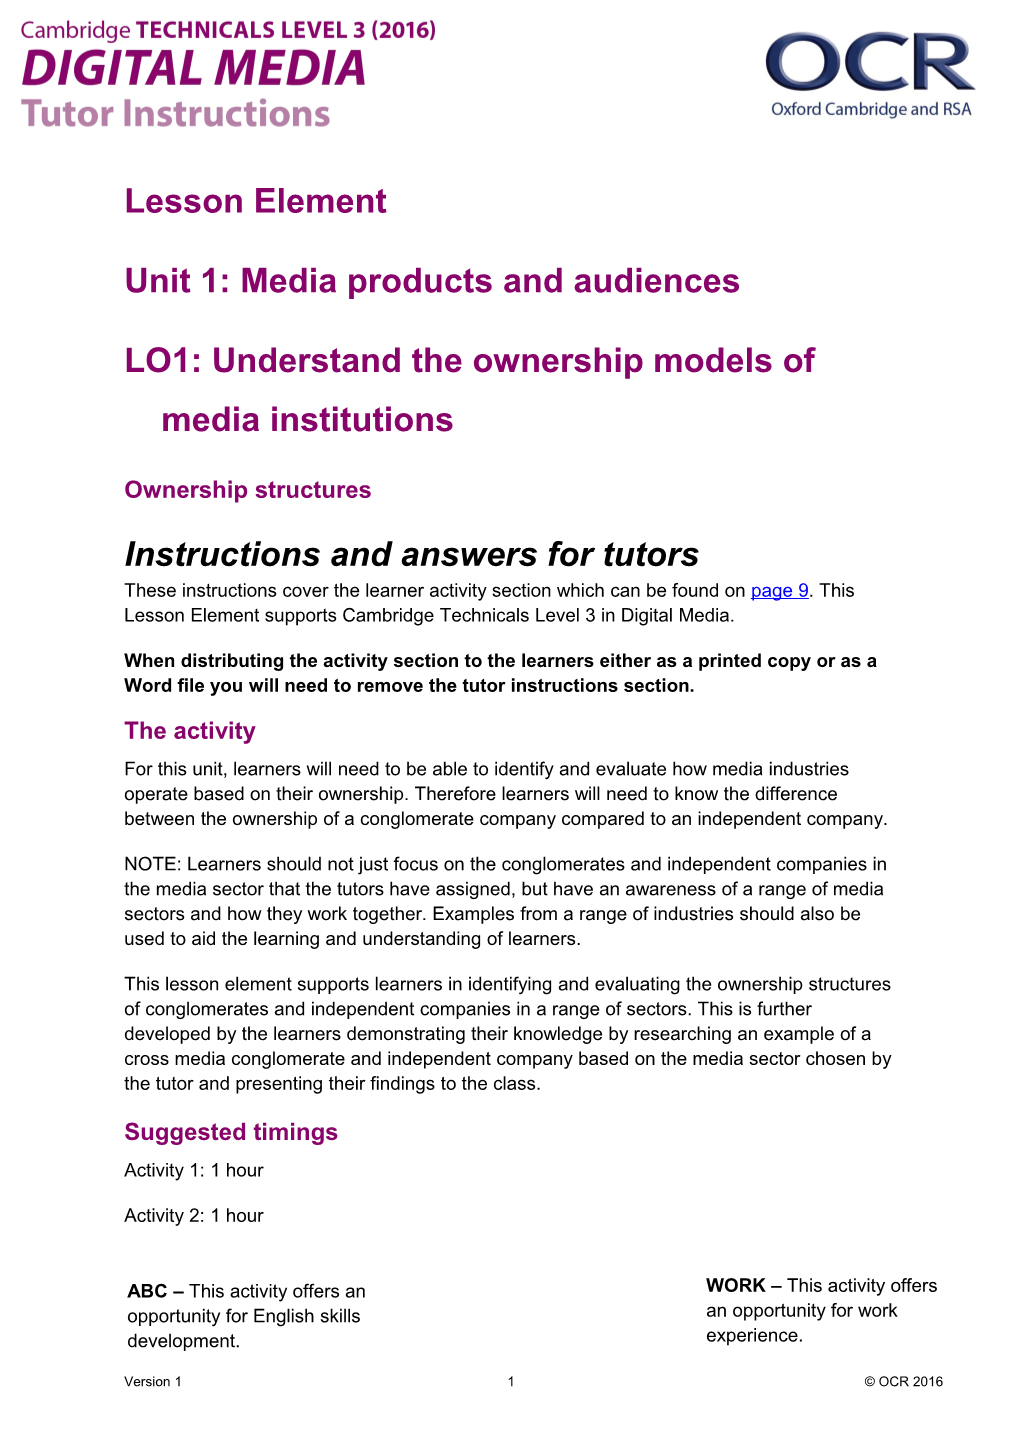 Cambridge Technicals Level 3 Digital Media Lesson Element 1